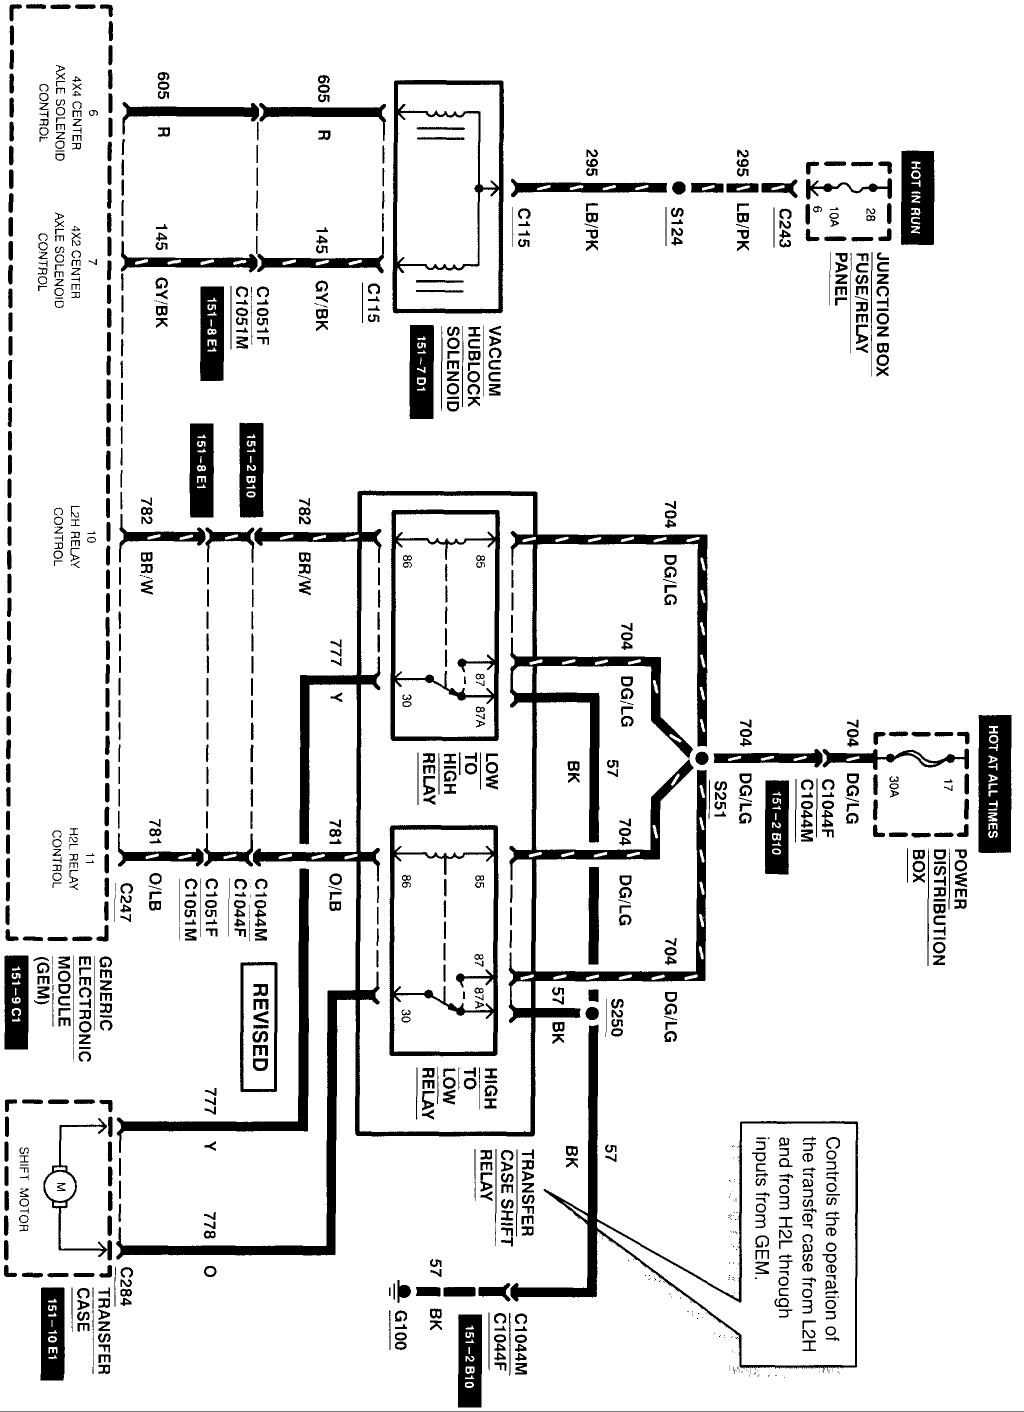 1999 ford f800 wiring diagram